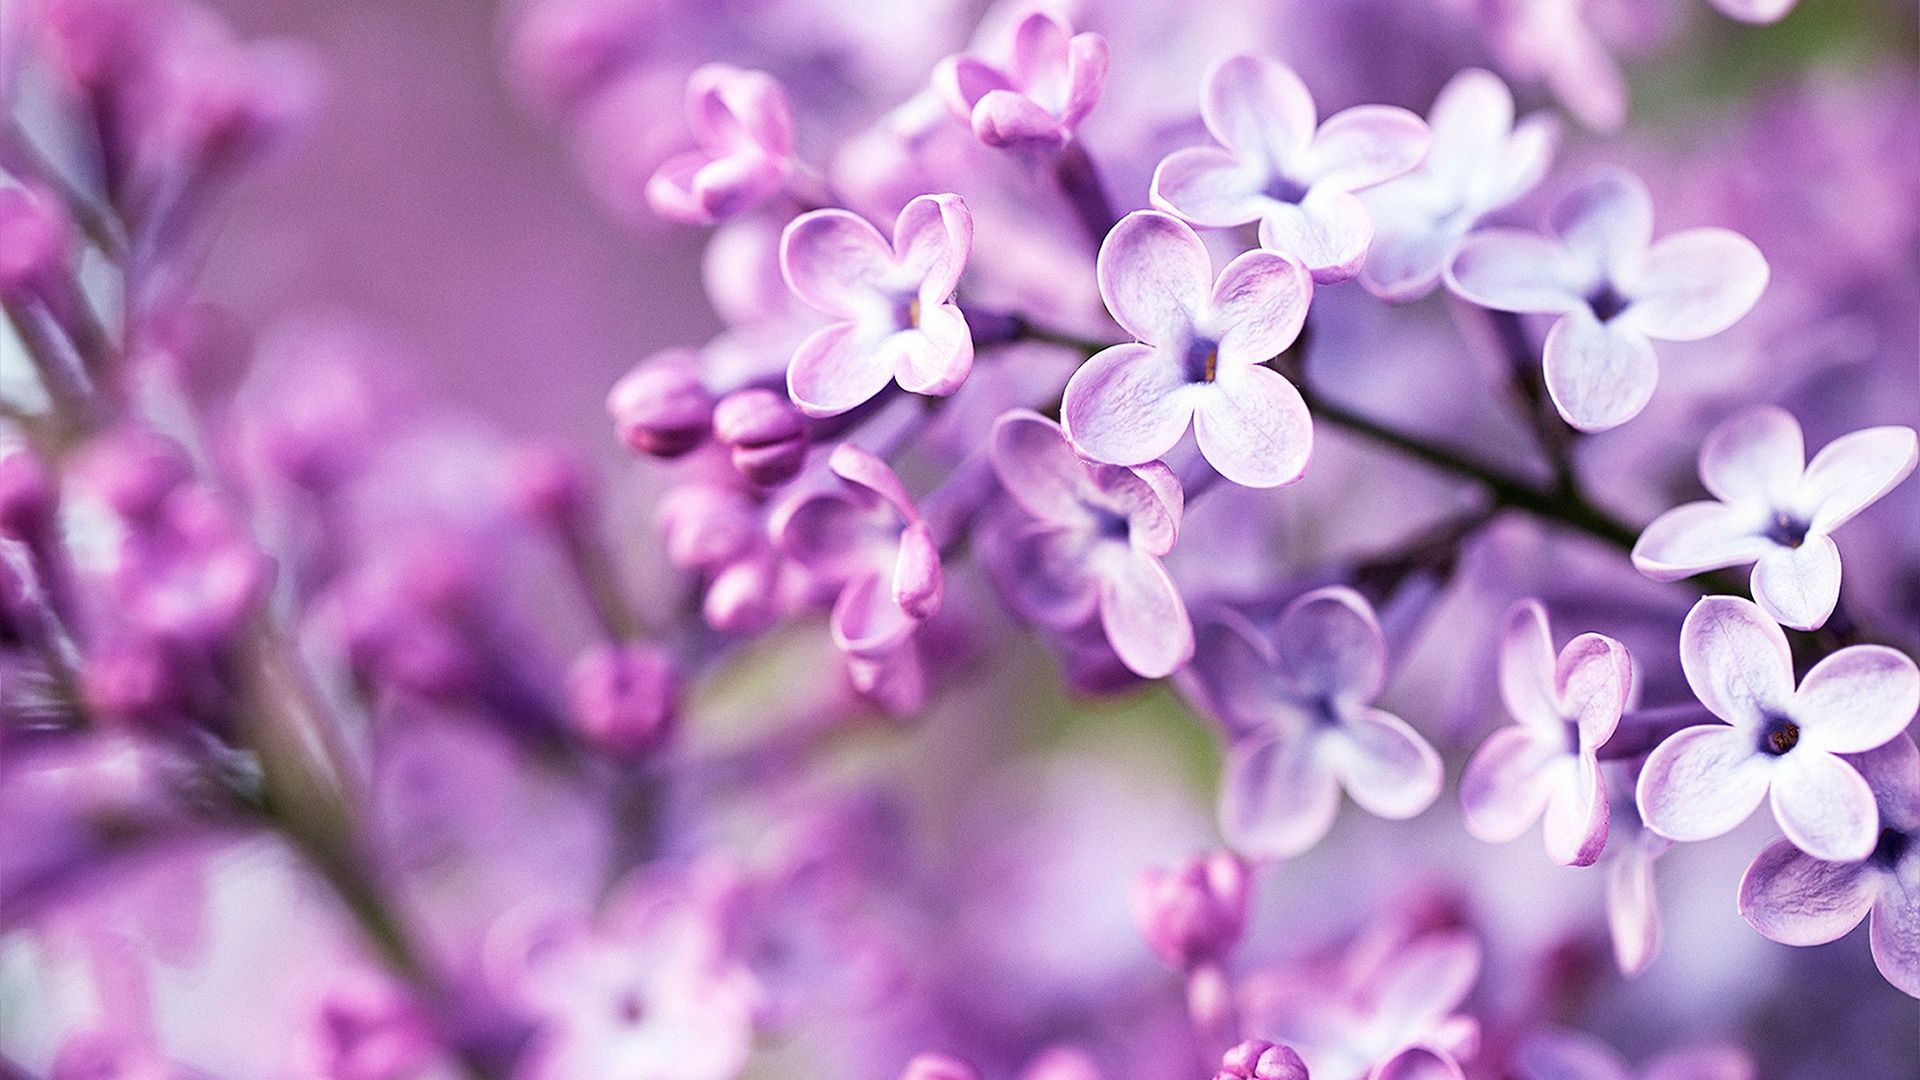 habrumalas: Purple Flowers Tumblr Image